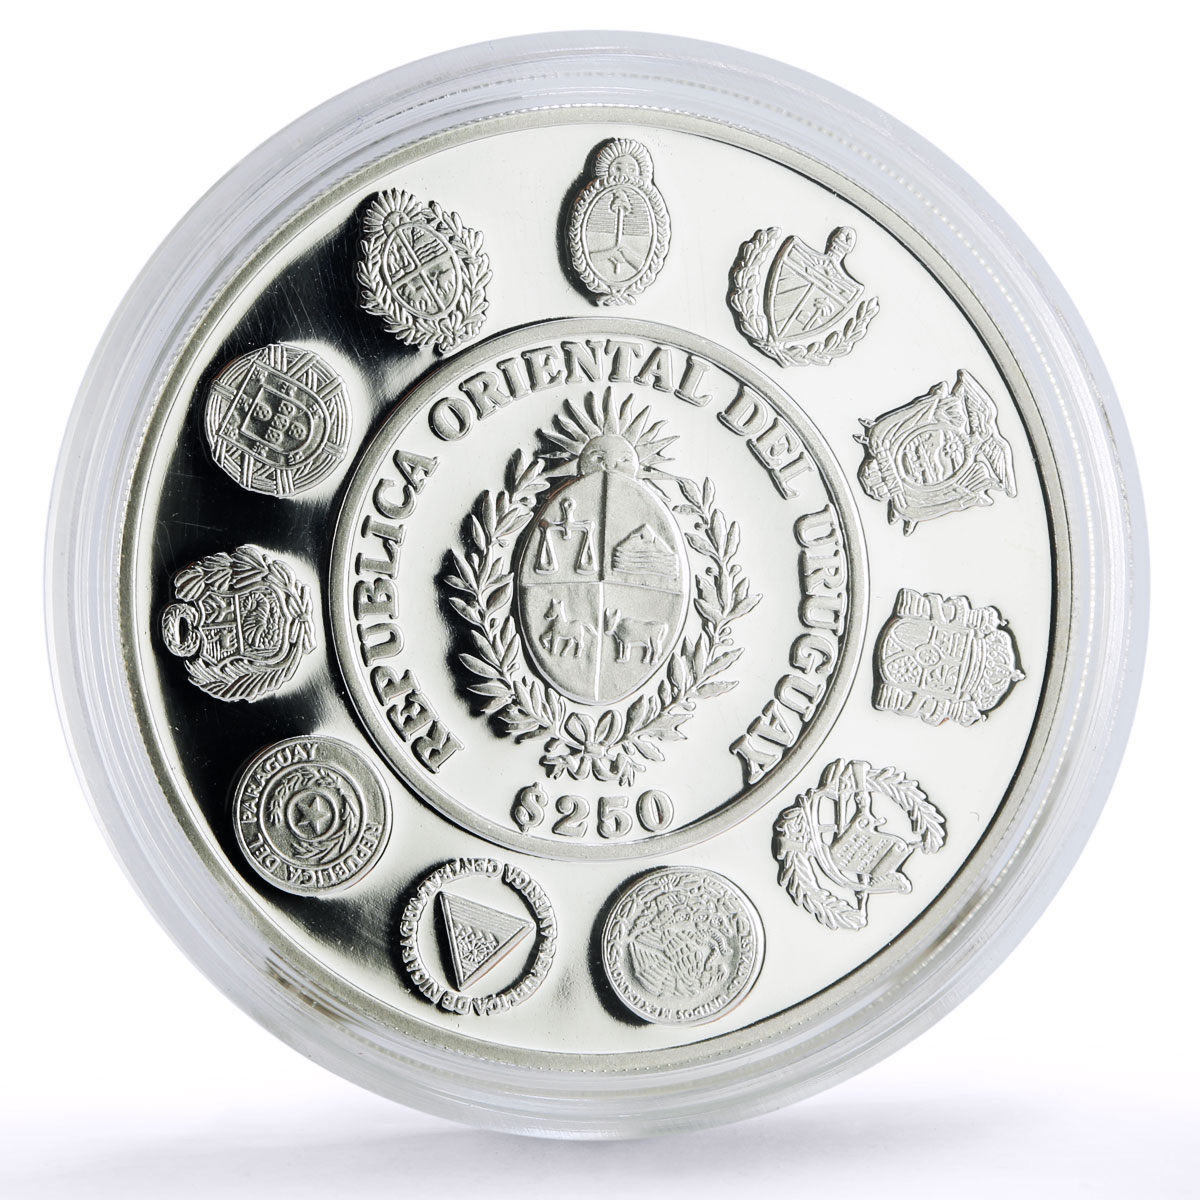 Uruguay 250 pesos Ibero-American Hombre Caballo Horseman proof silver coin 2000